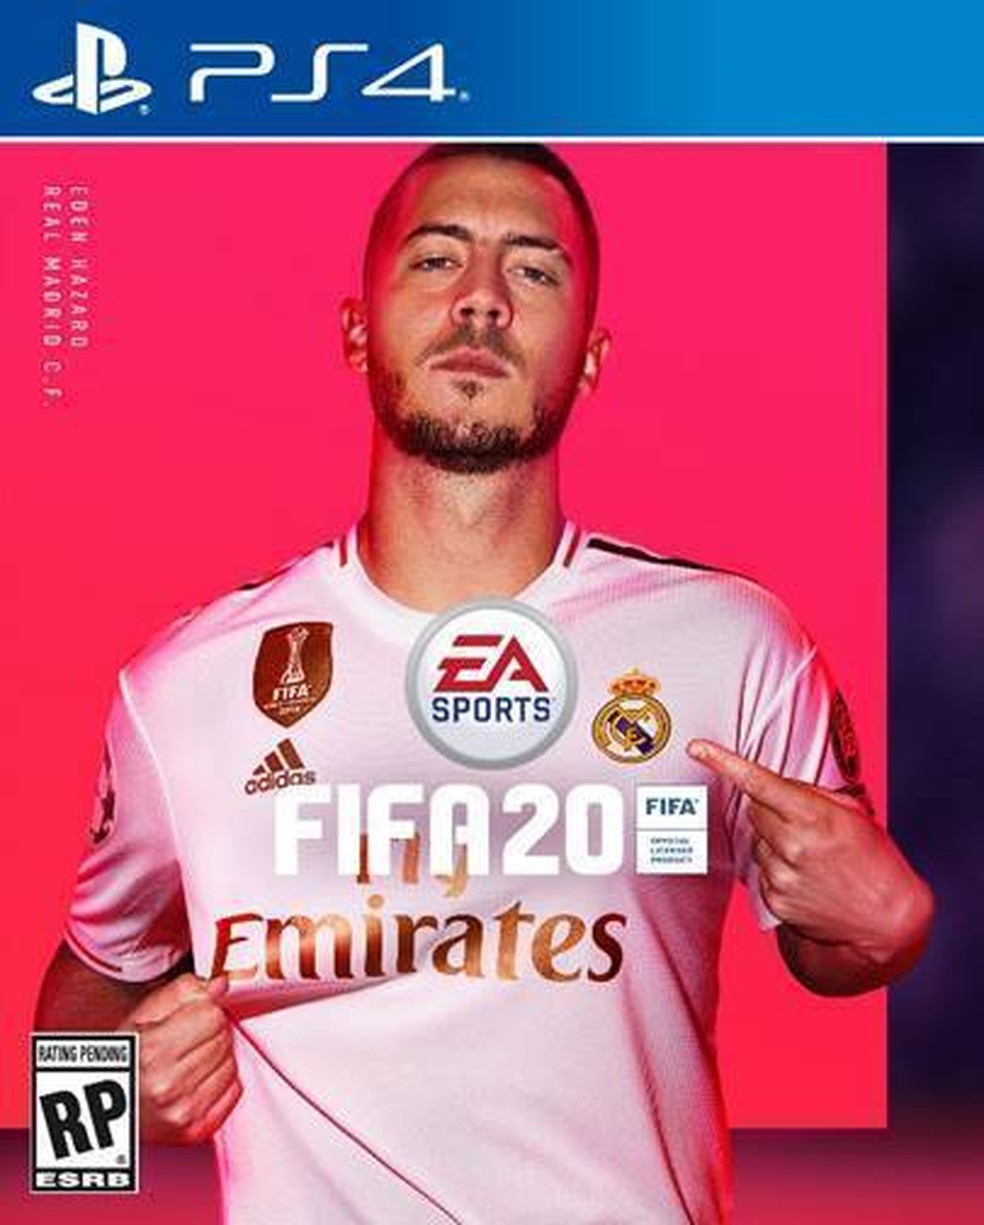 Quem é o jogador na capa do FIFA 20?